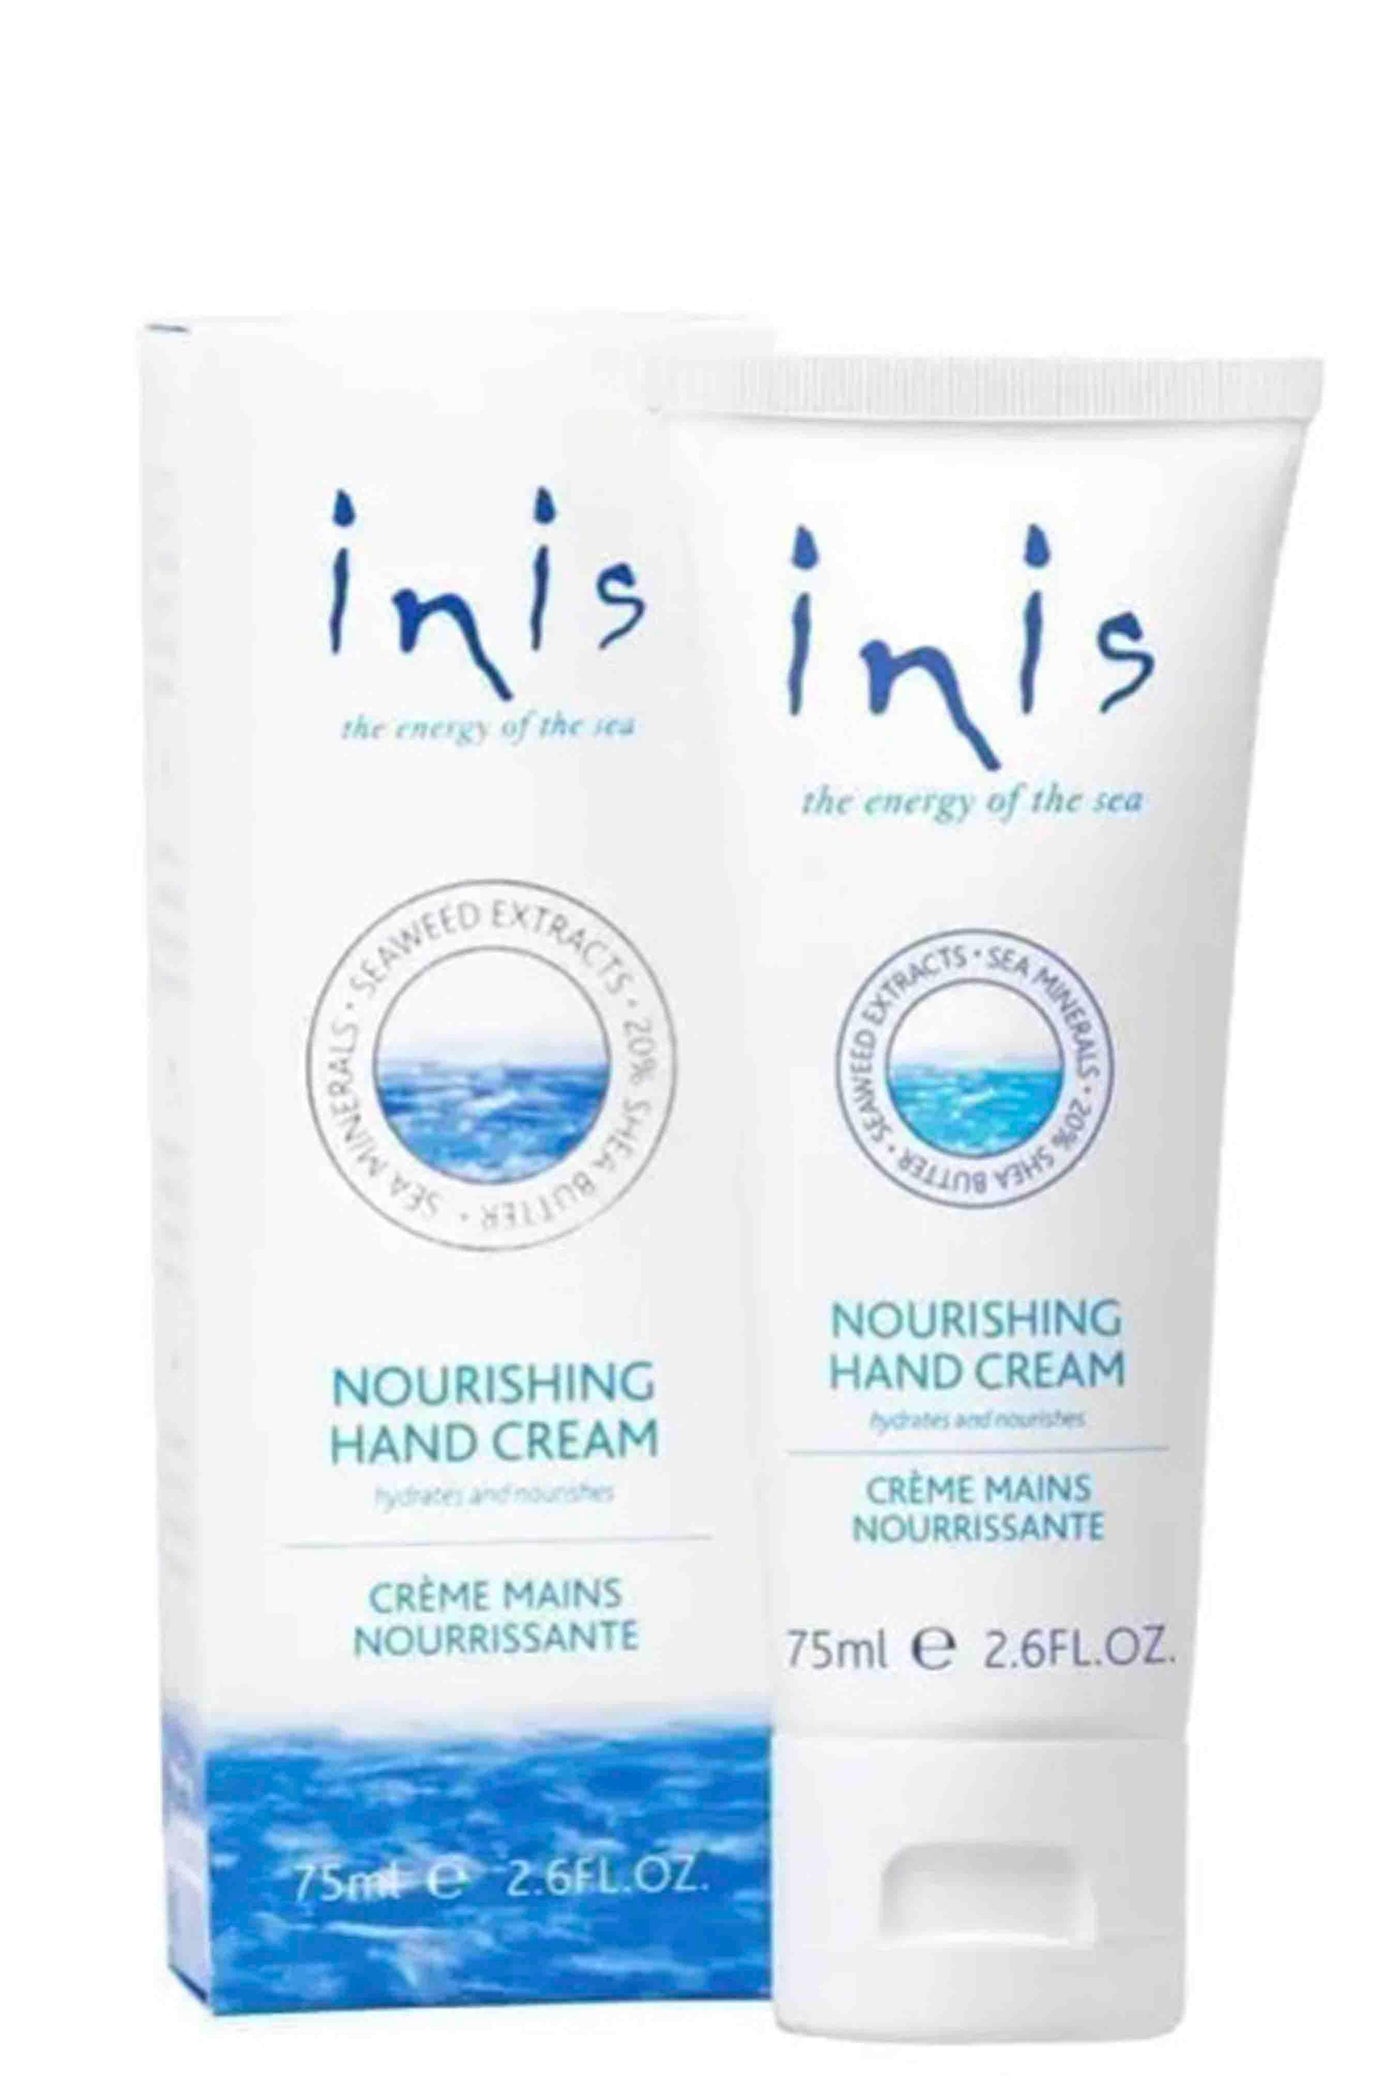 Nourishing Hand Cream from Inis